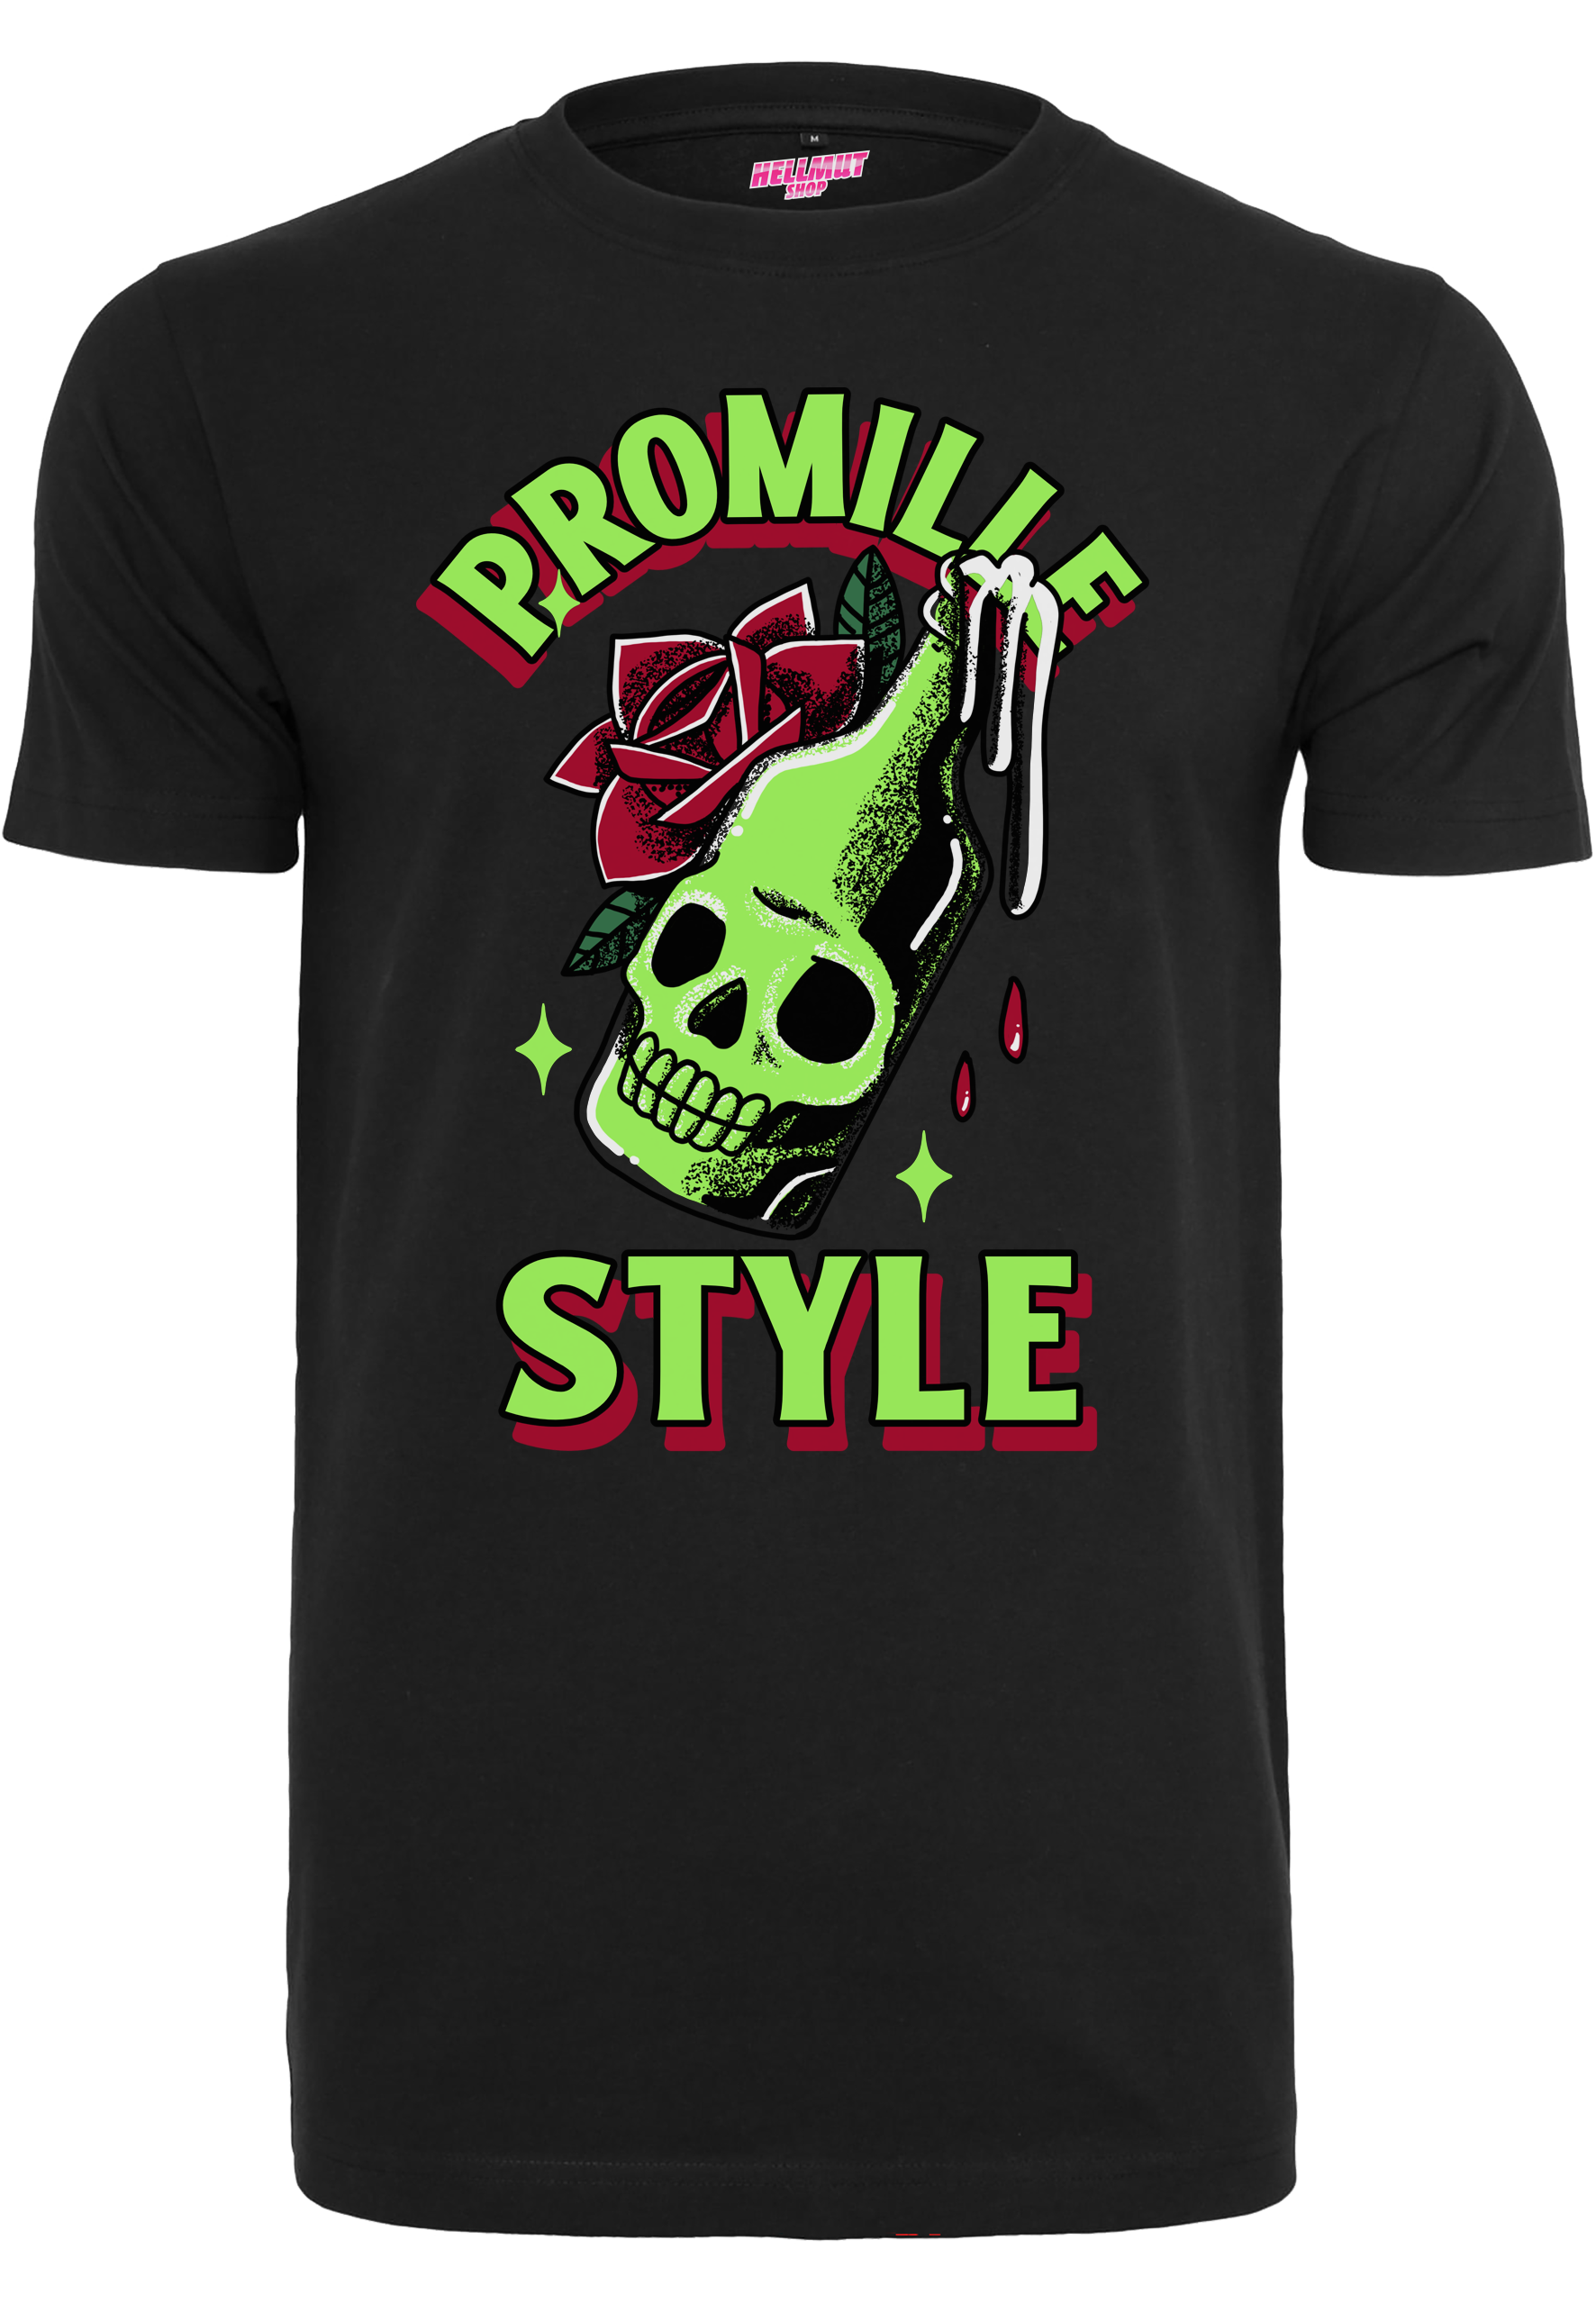 Promille Style -BottleSkull Shirt [black]